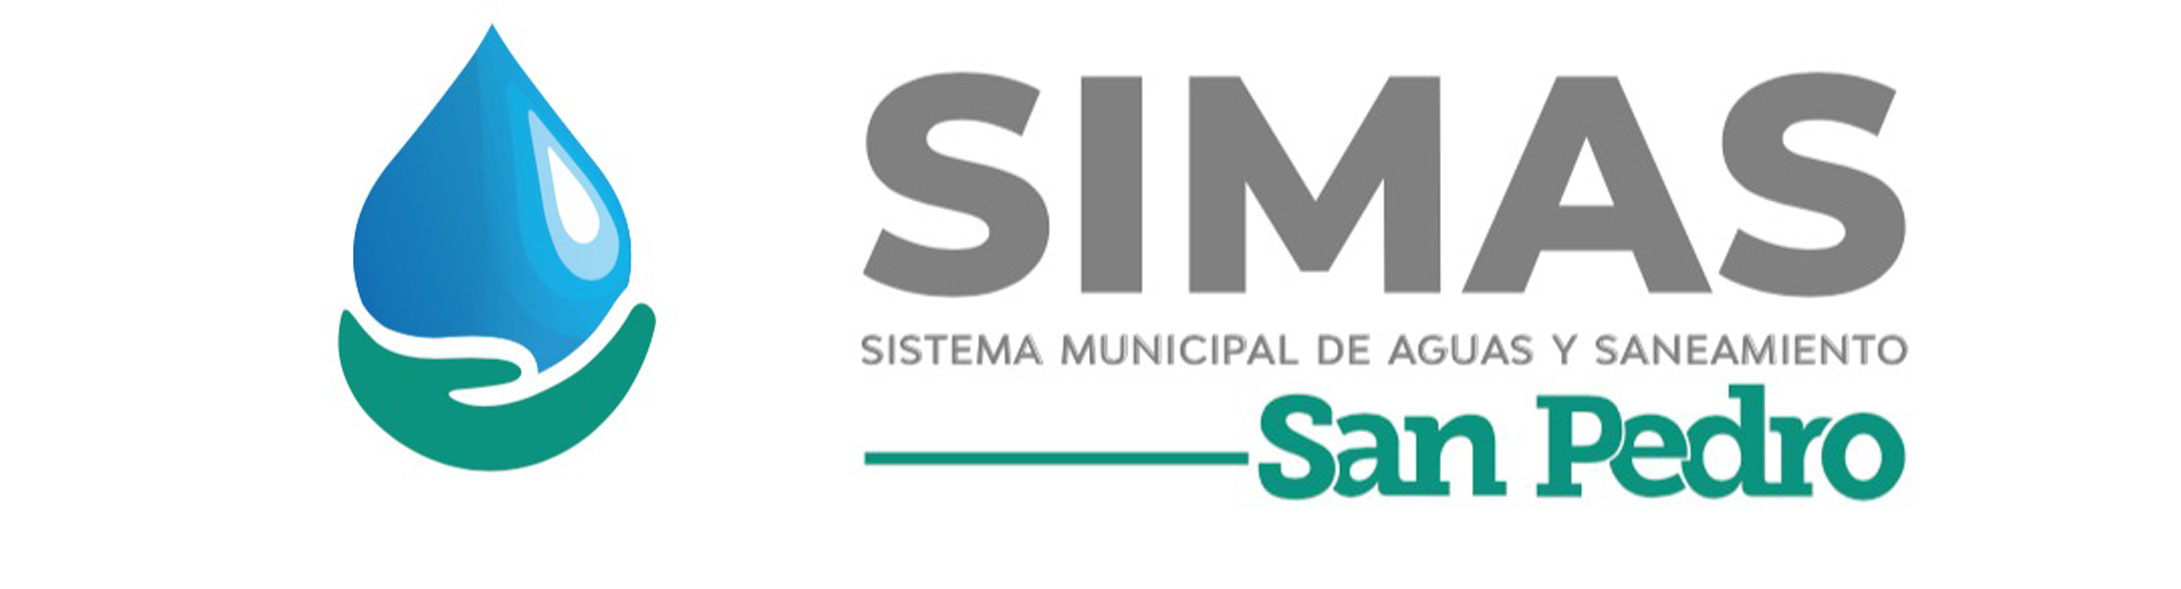 Administración San Pedro Simas 22-24